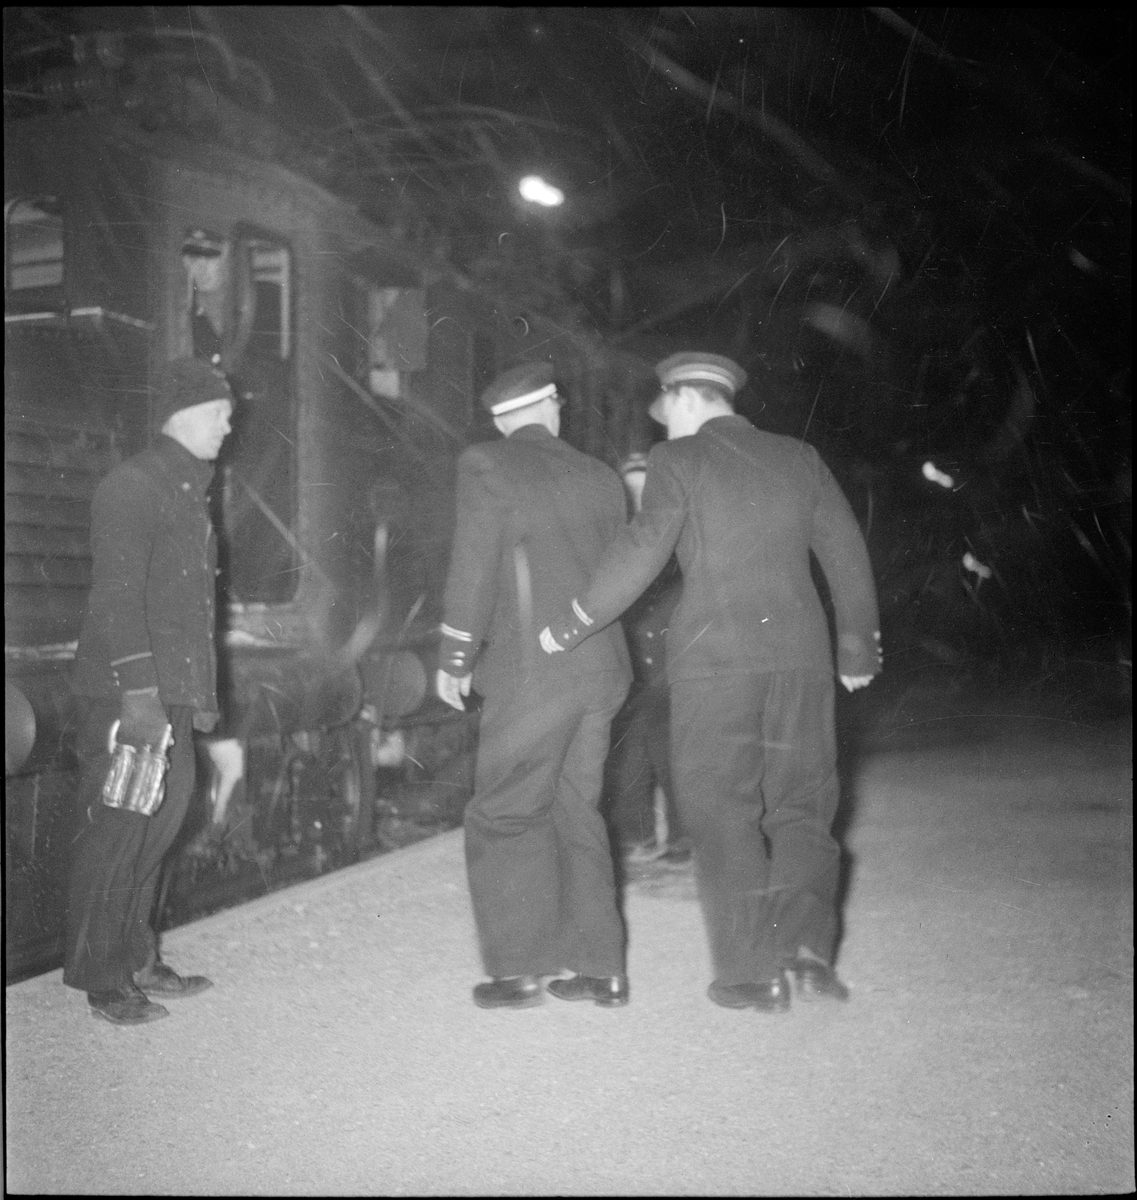 Det første elektriske toget ankommer Egersund stasjon kl. 6:15 1. februar 1950. Det snør og blåser kraftig.